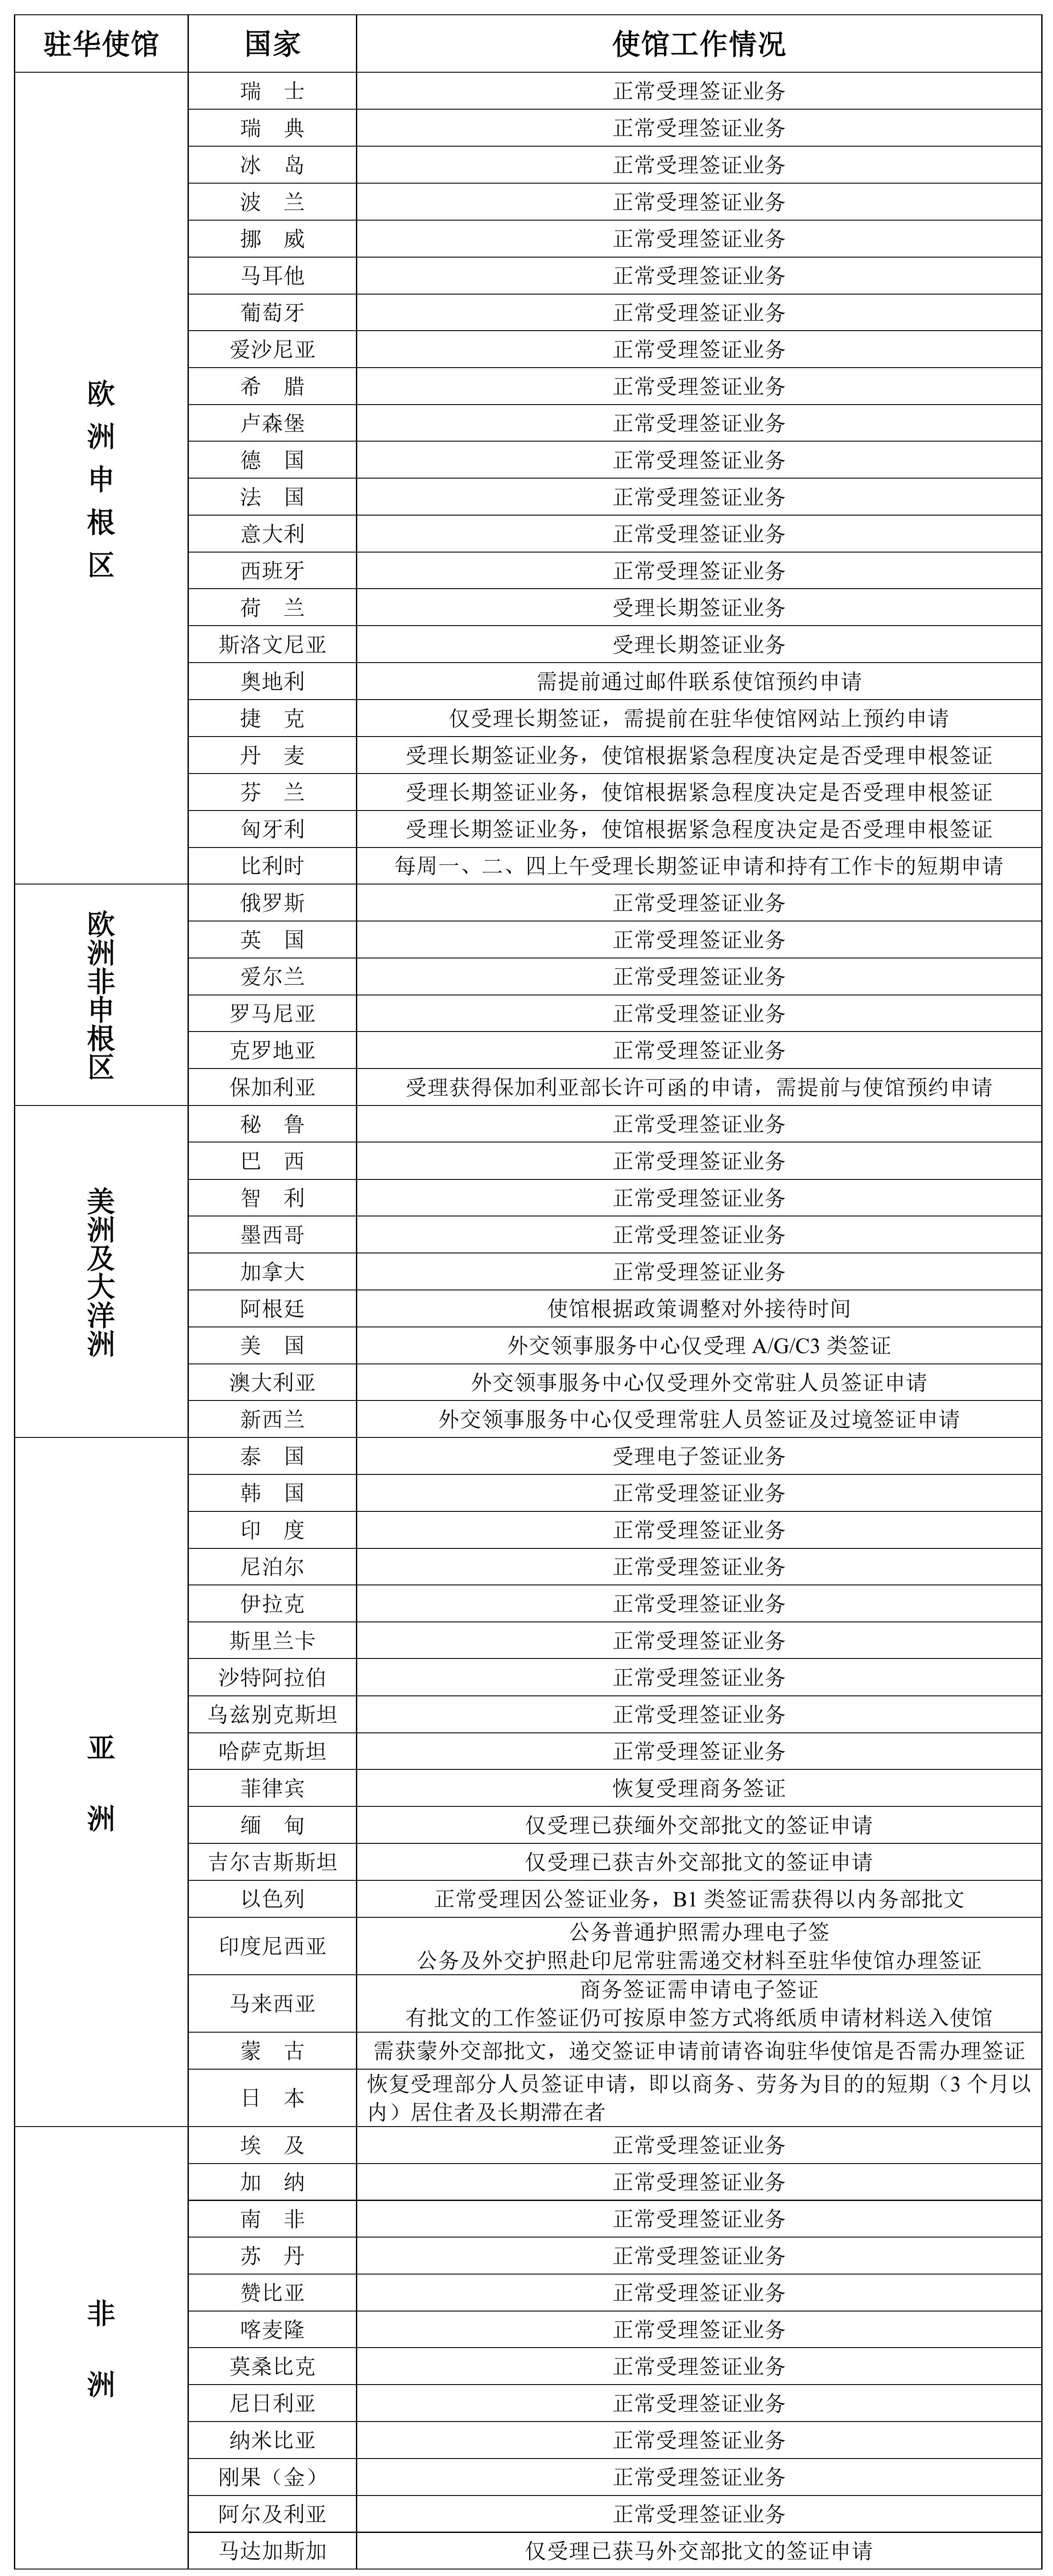 2022年6月28日部分驻华使馆工作情况统计表.jpg